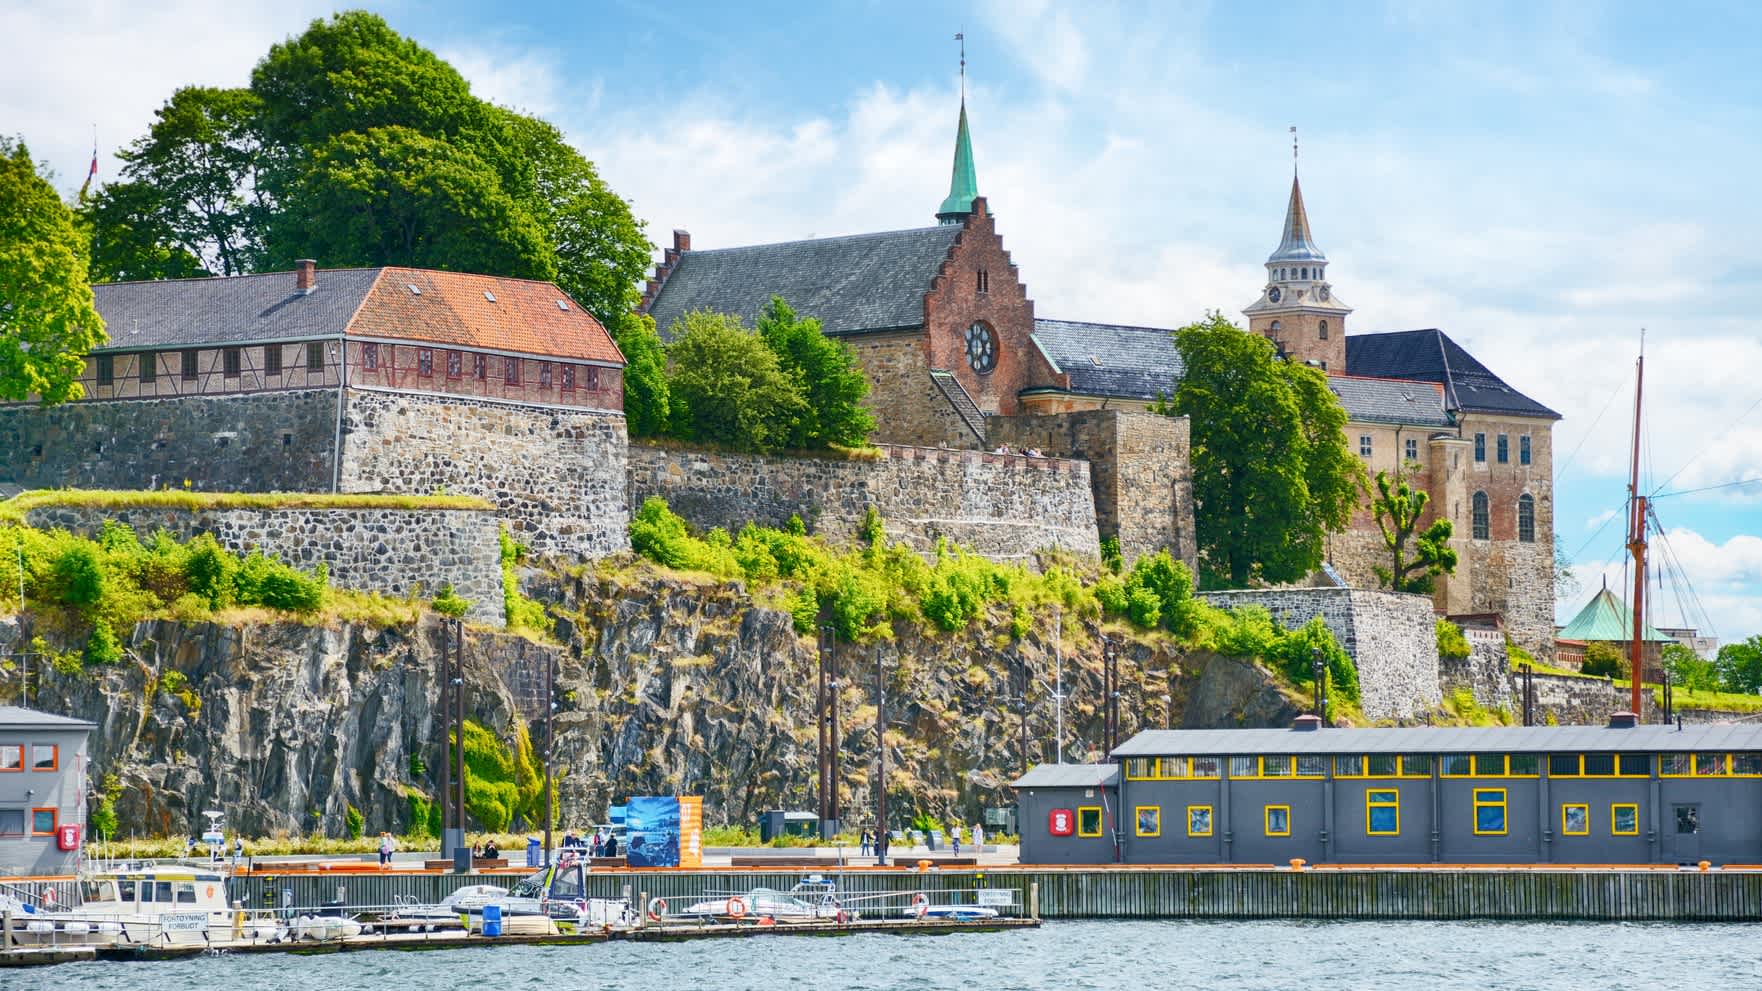 Blick auf den Hafen von Oslo und Festung Akershus, Norwegen.